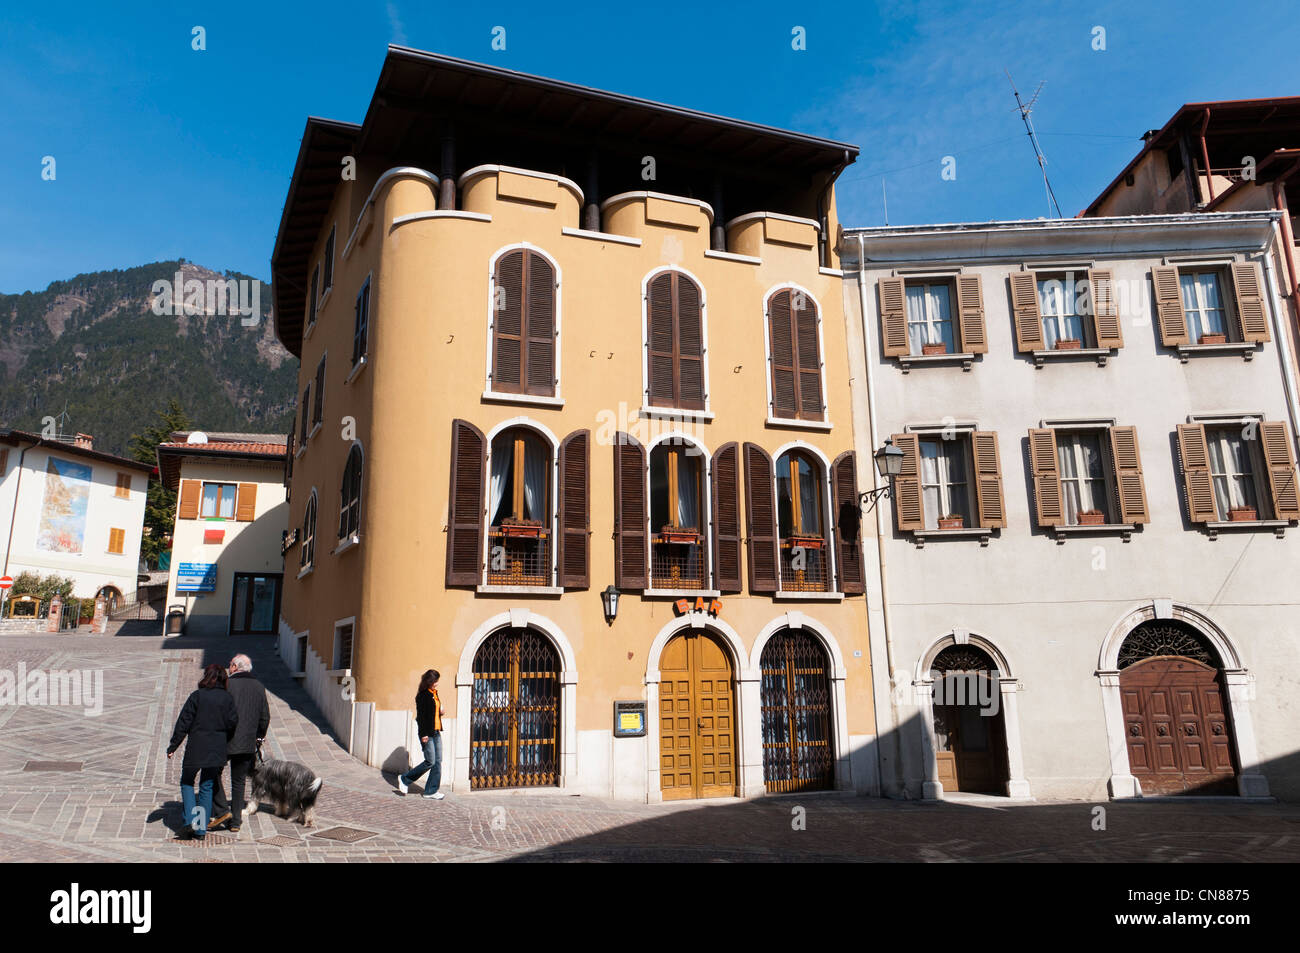 Tignale, Lago di Garda, Lombardia, Italy. Stock Photo